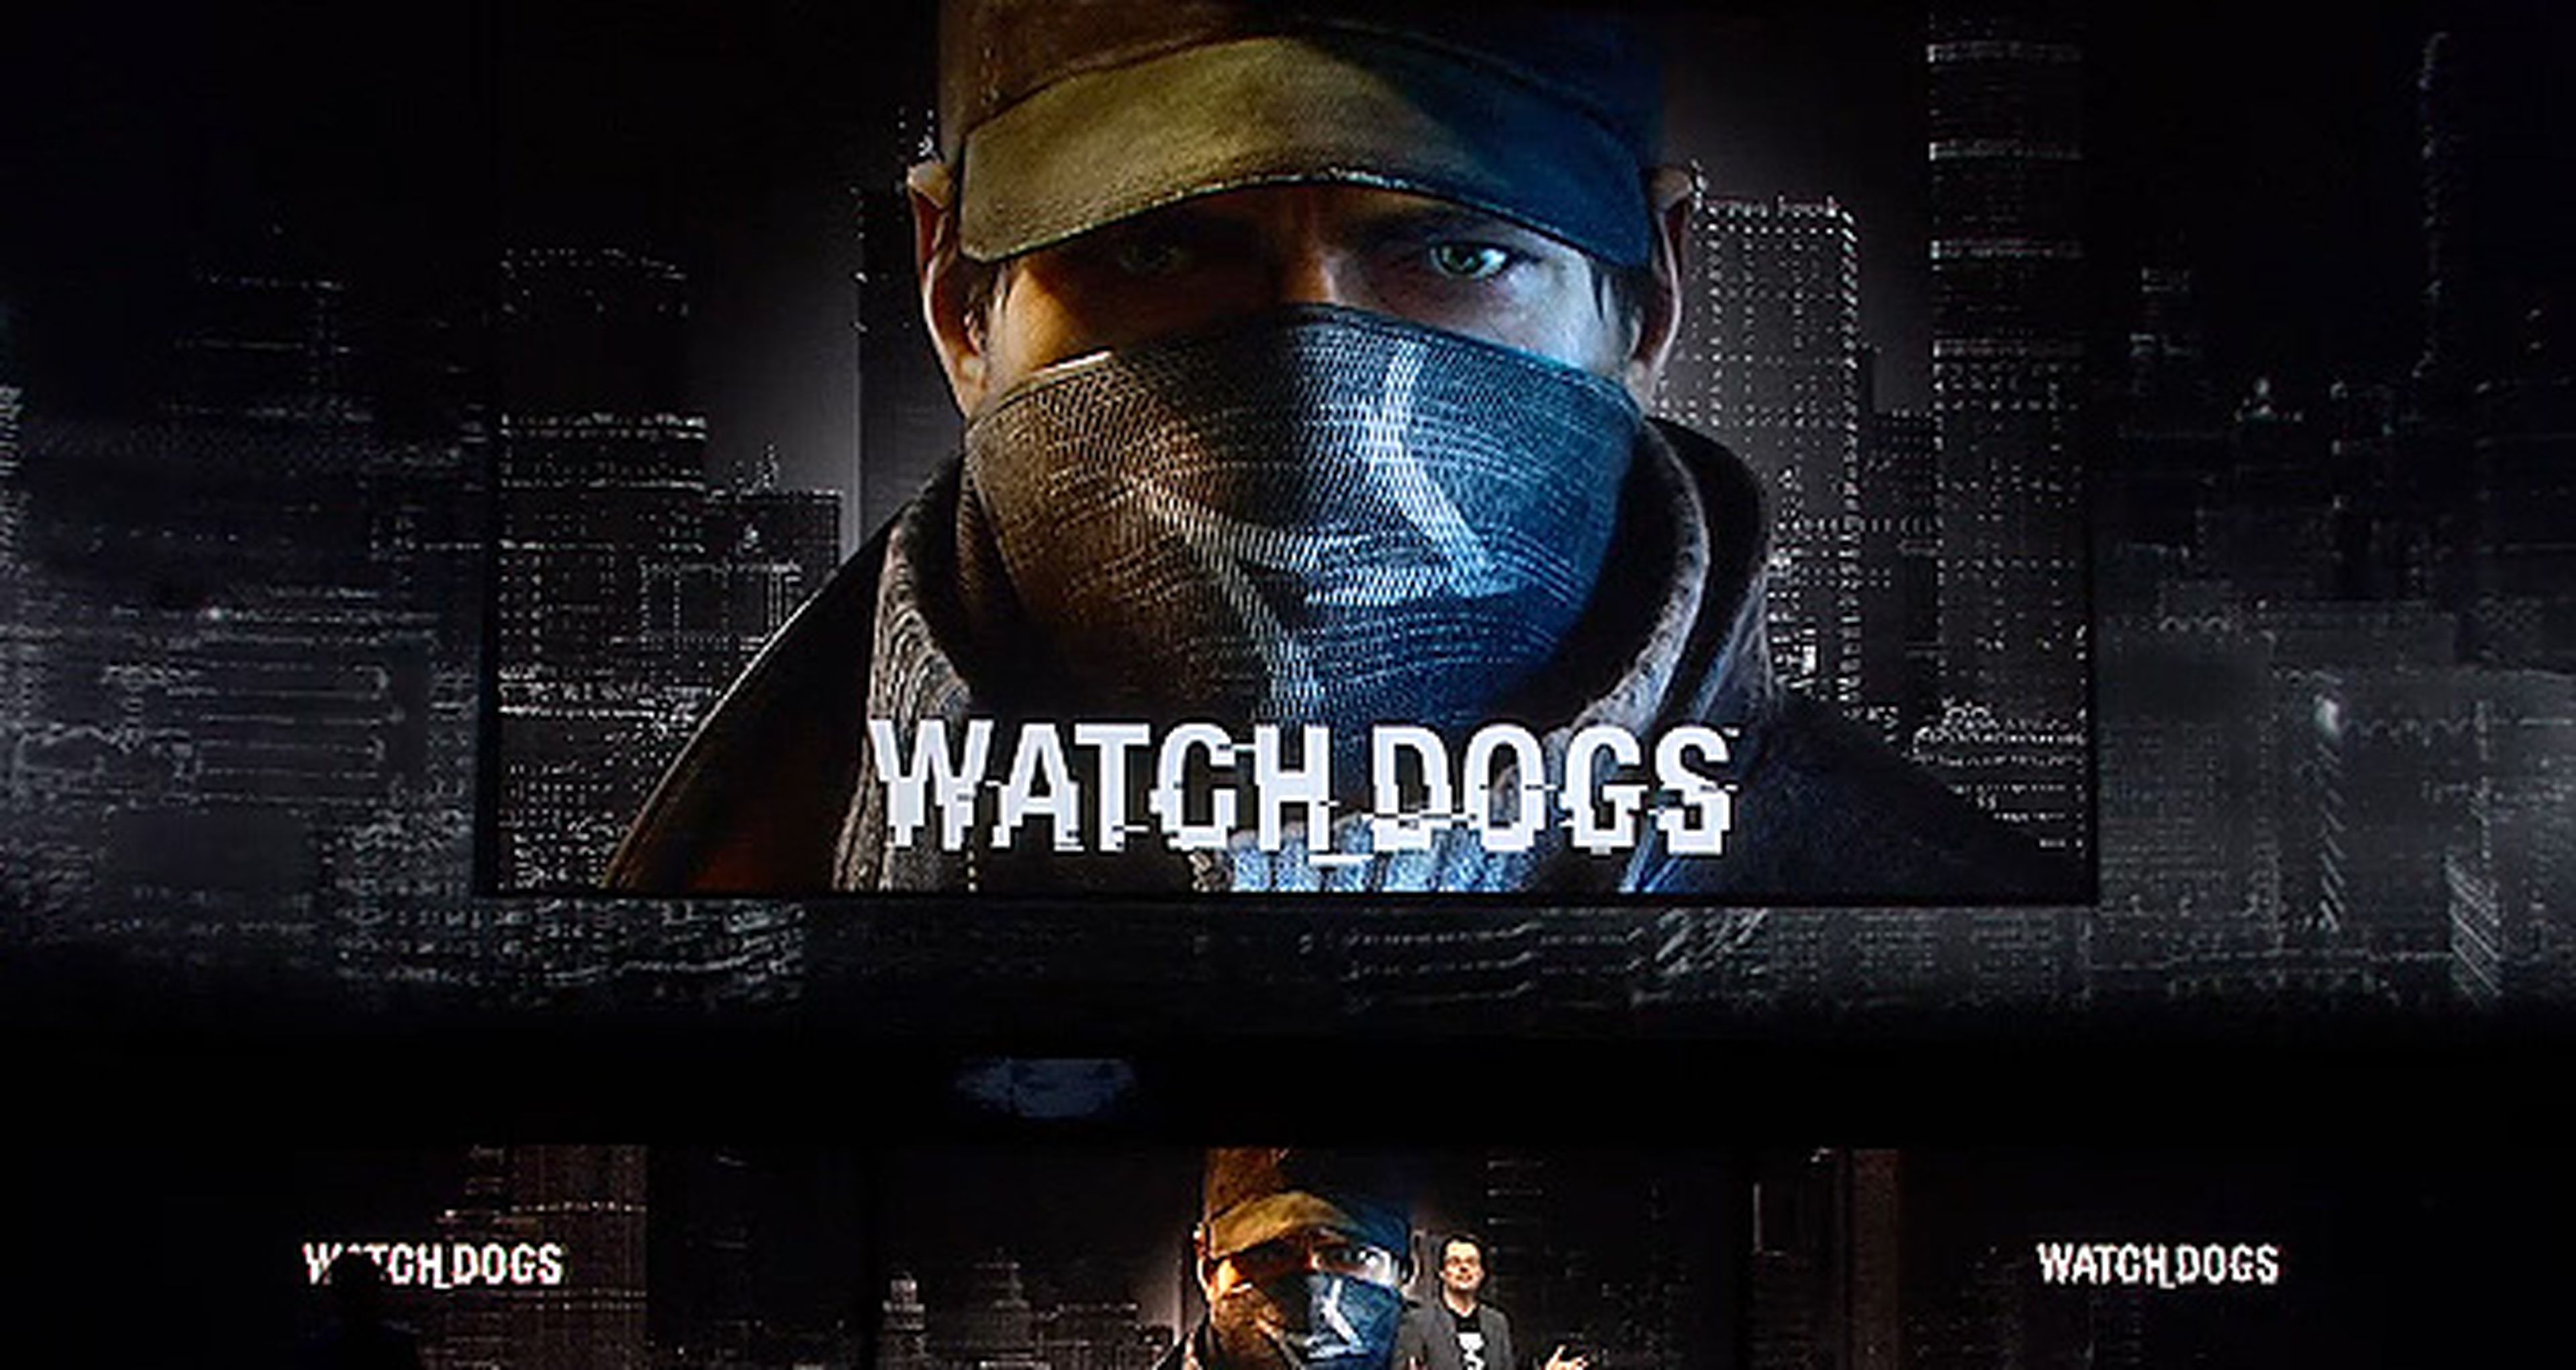 PS4 con Watch Dogs entre sus filas